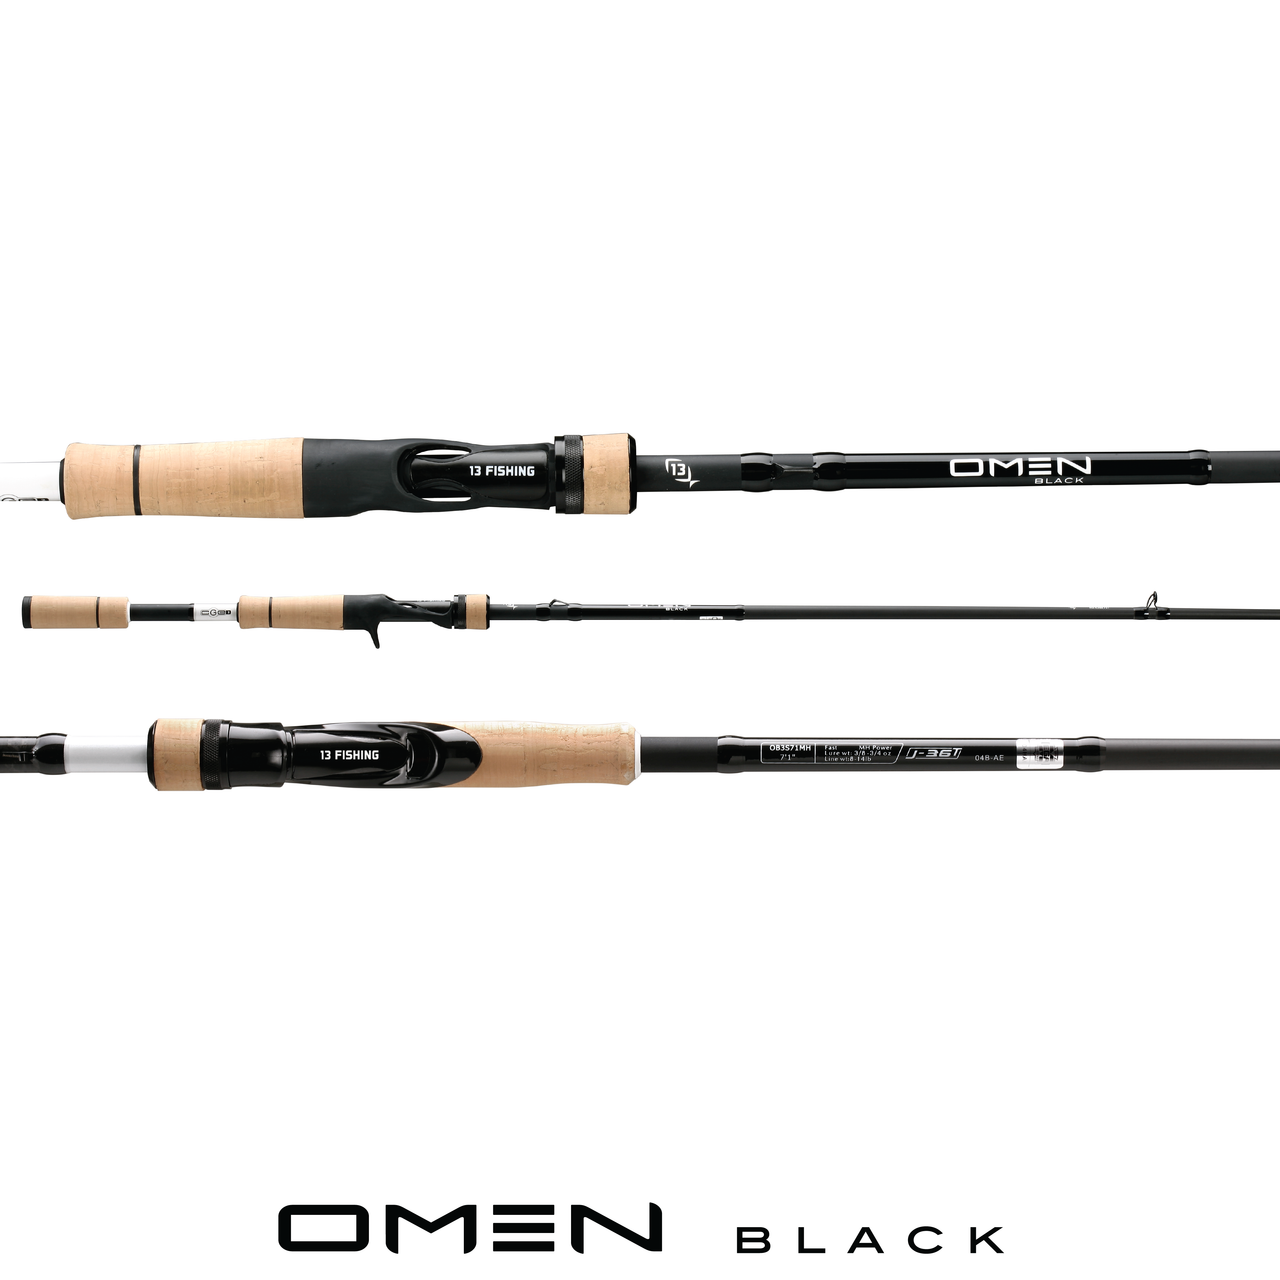 13 Fishing / Omen Black 3 Casting Rod